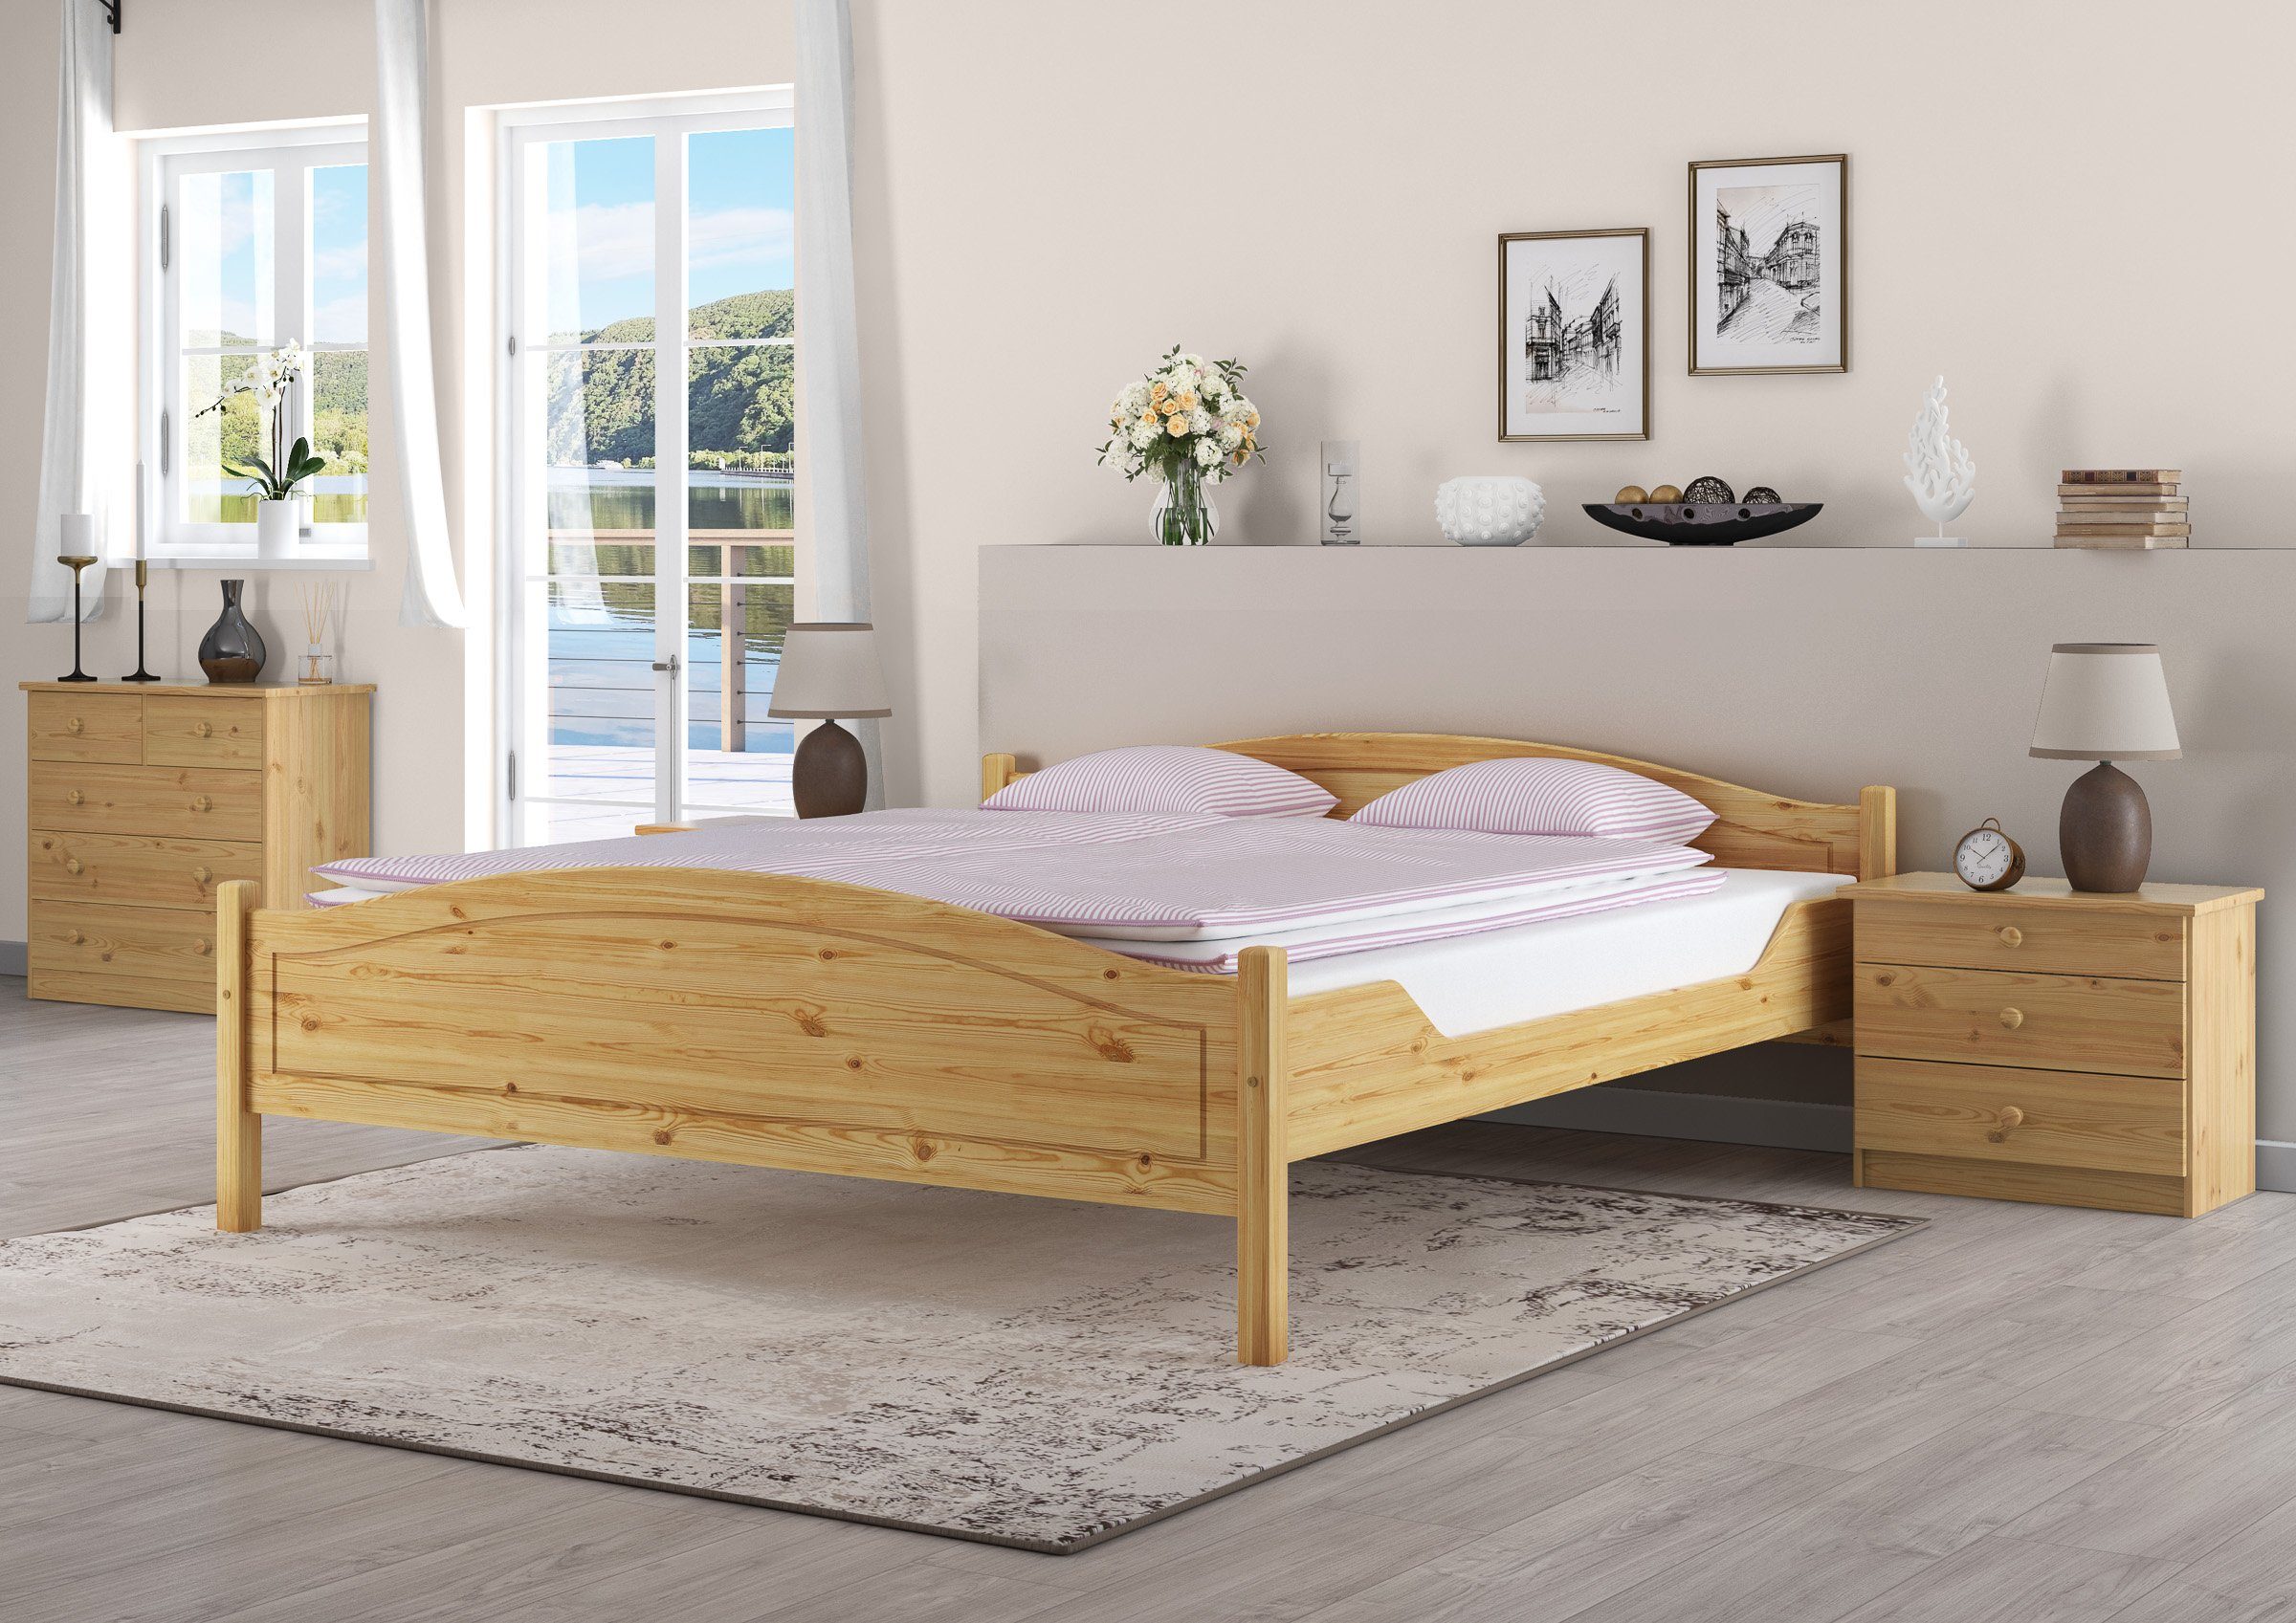 Doppelbett, Klassisches ERST-HOLZ Kiefer Bett Holzbett lackiert Kieferfarblos massiv 180x200